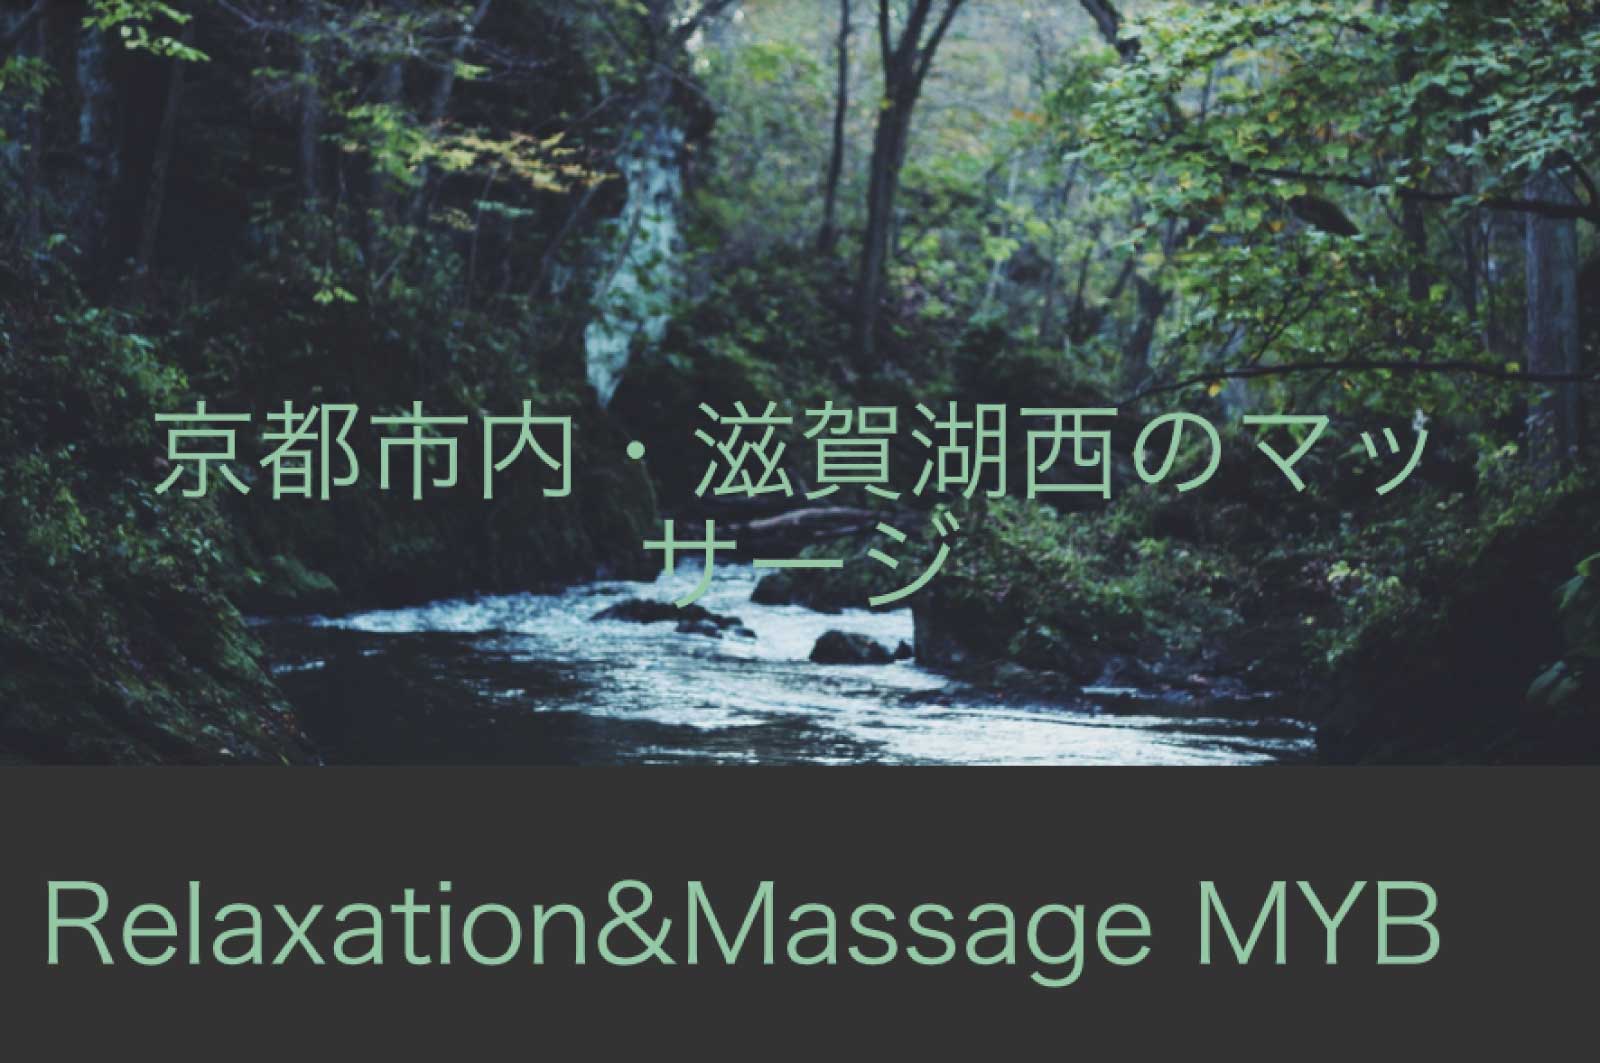 Relaxation&Massage MYB